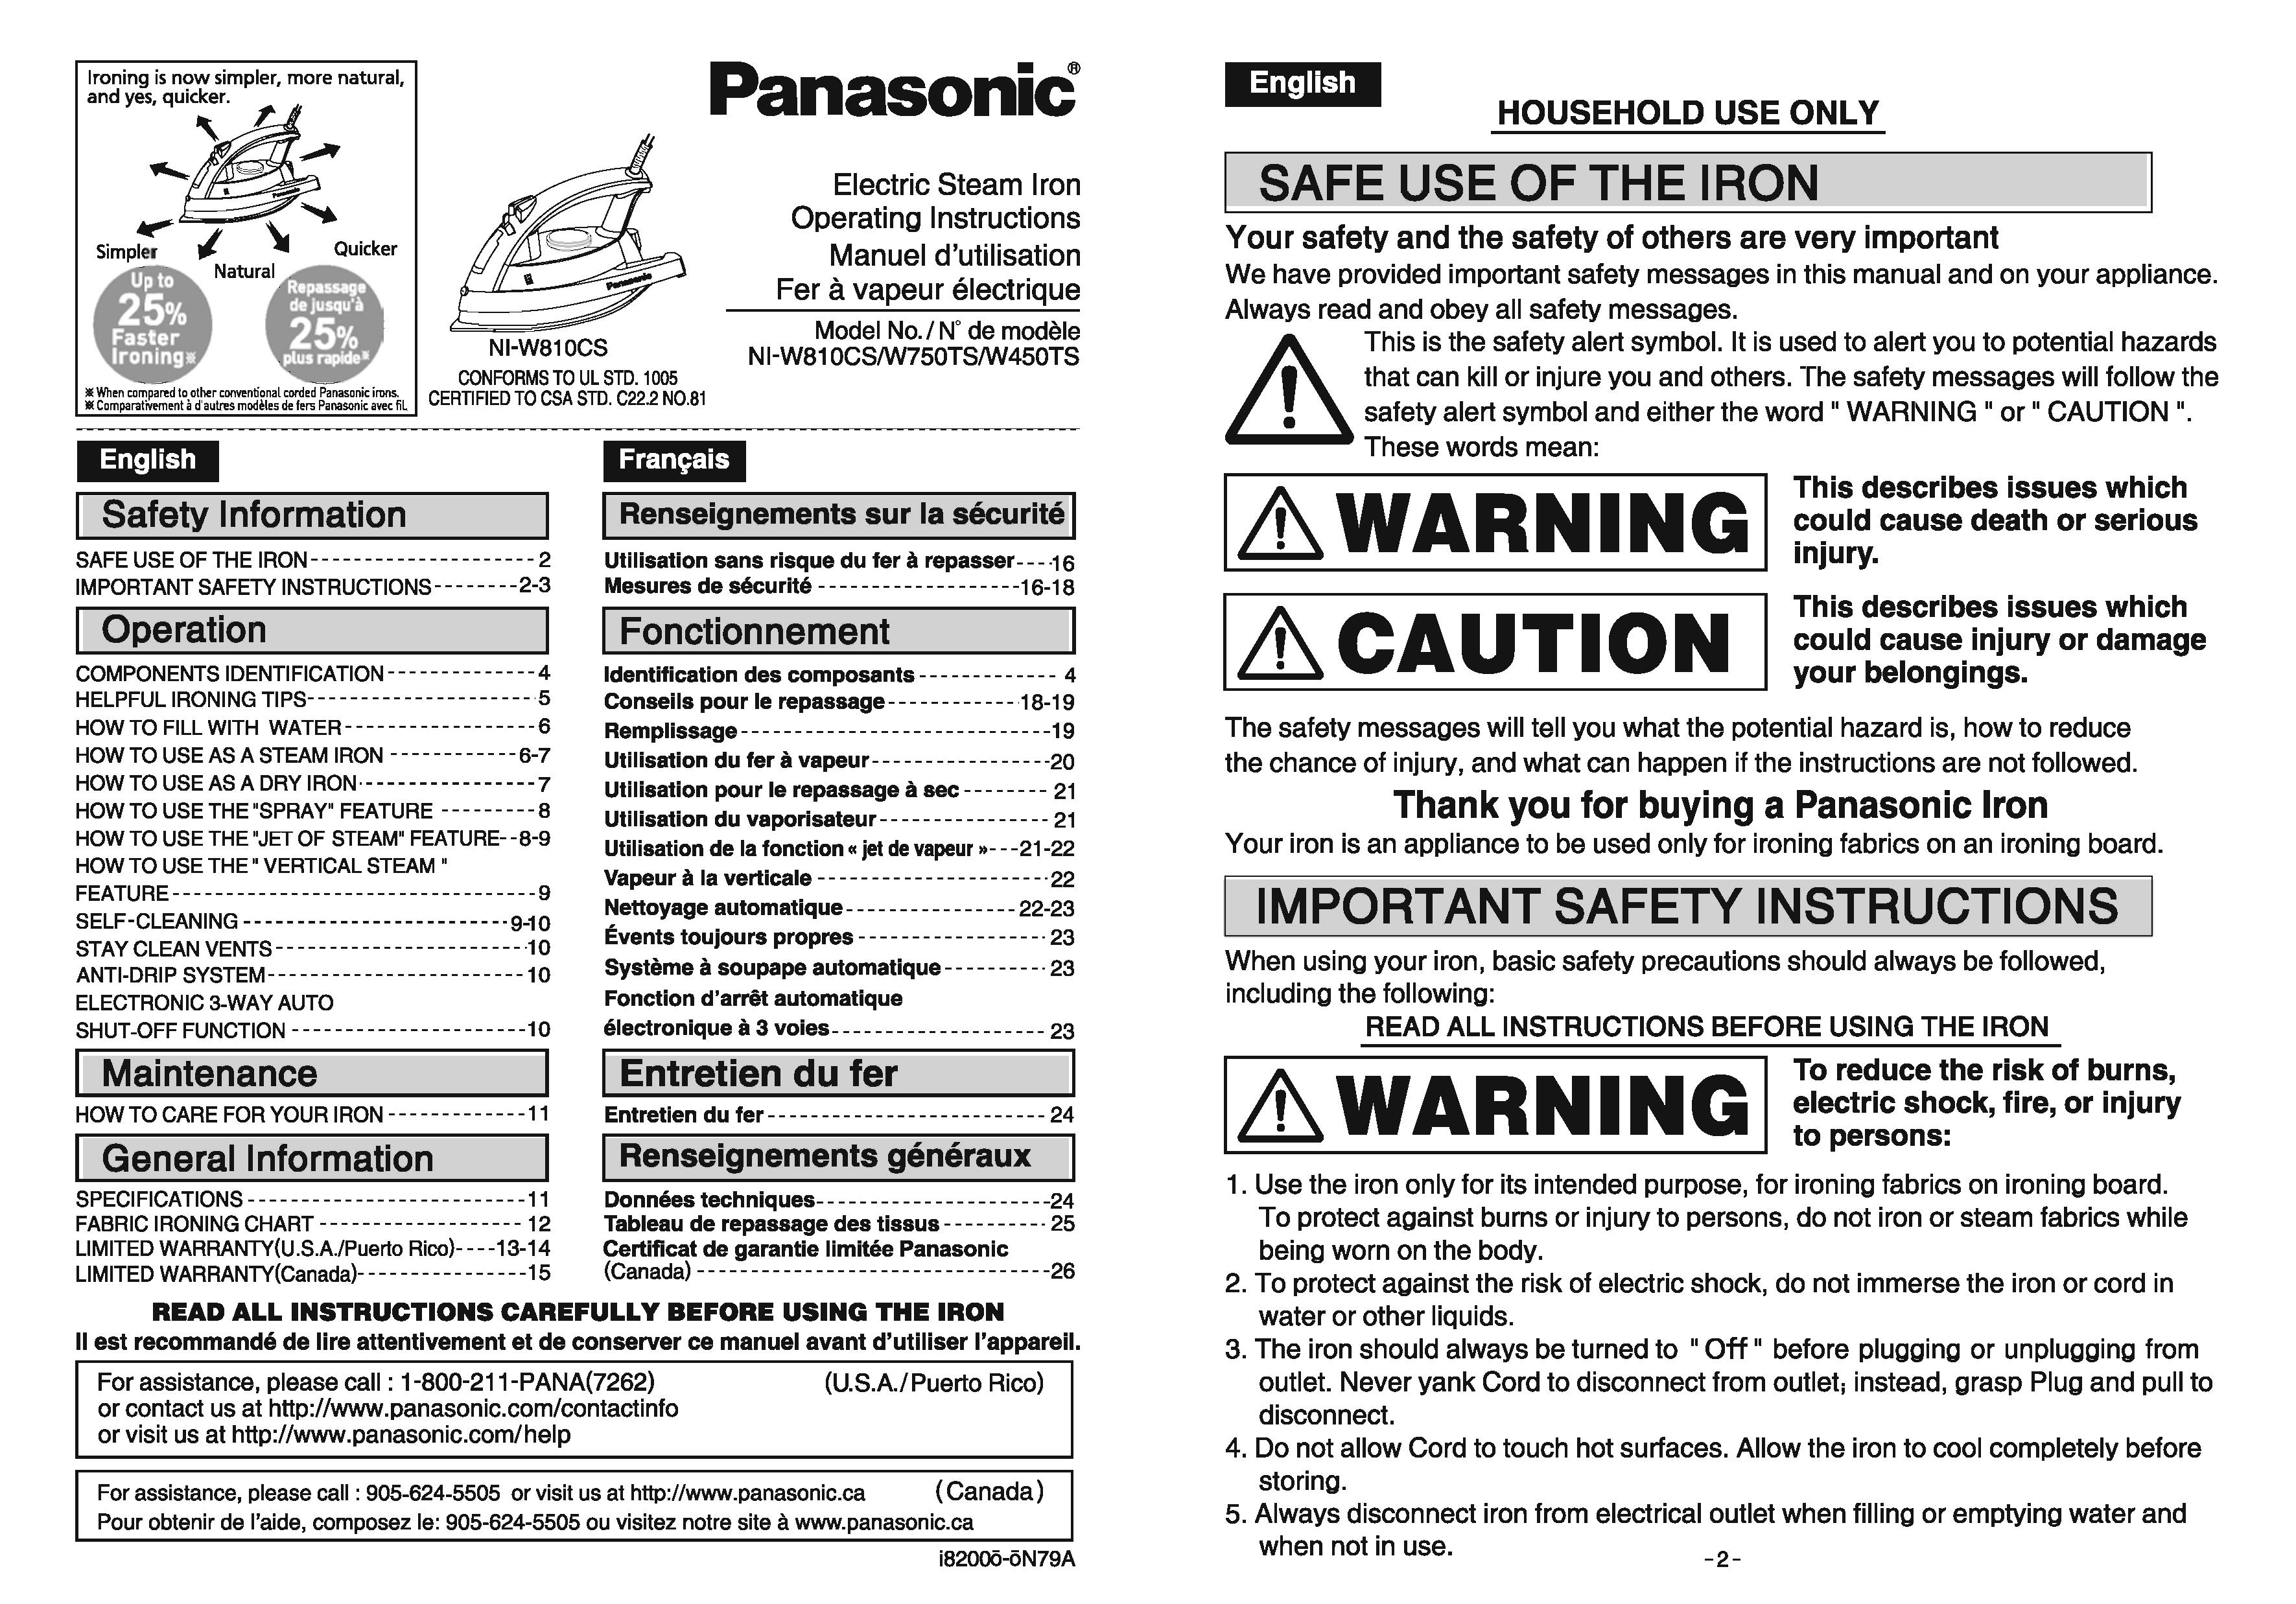 Panasonic NI-W450TS Iron User Manual